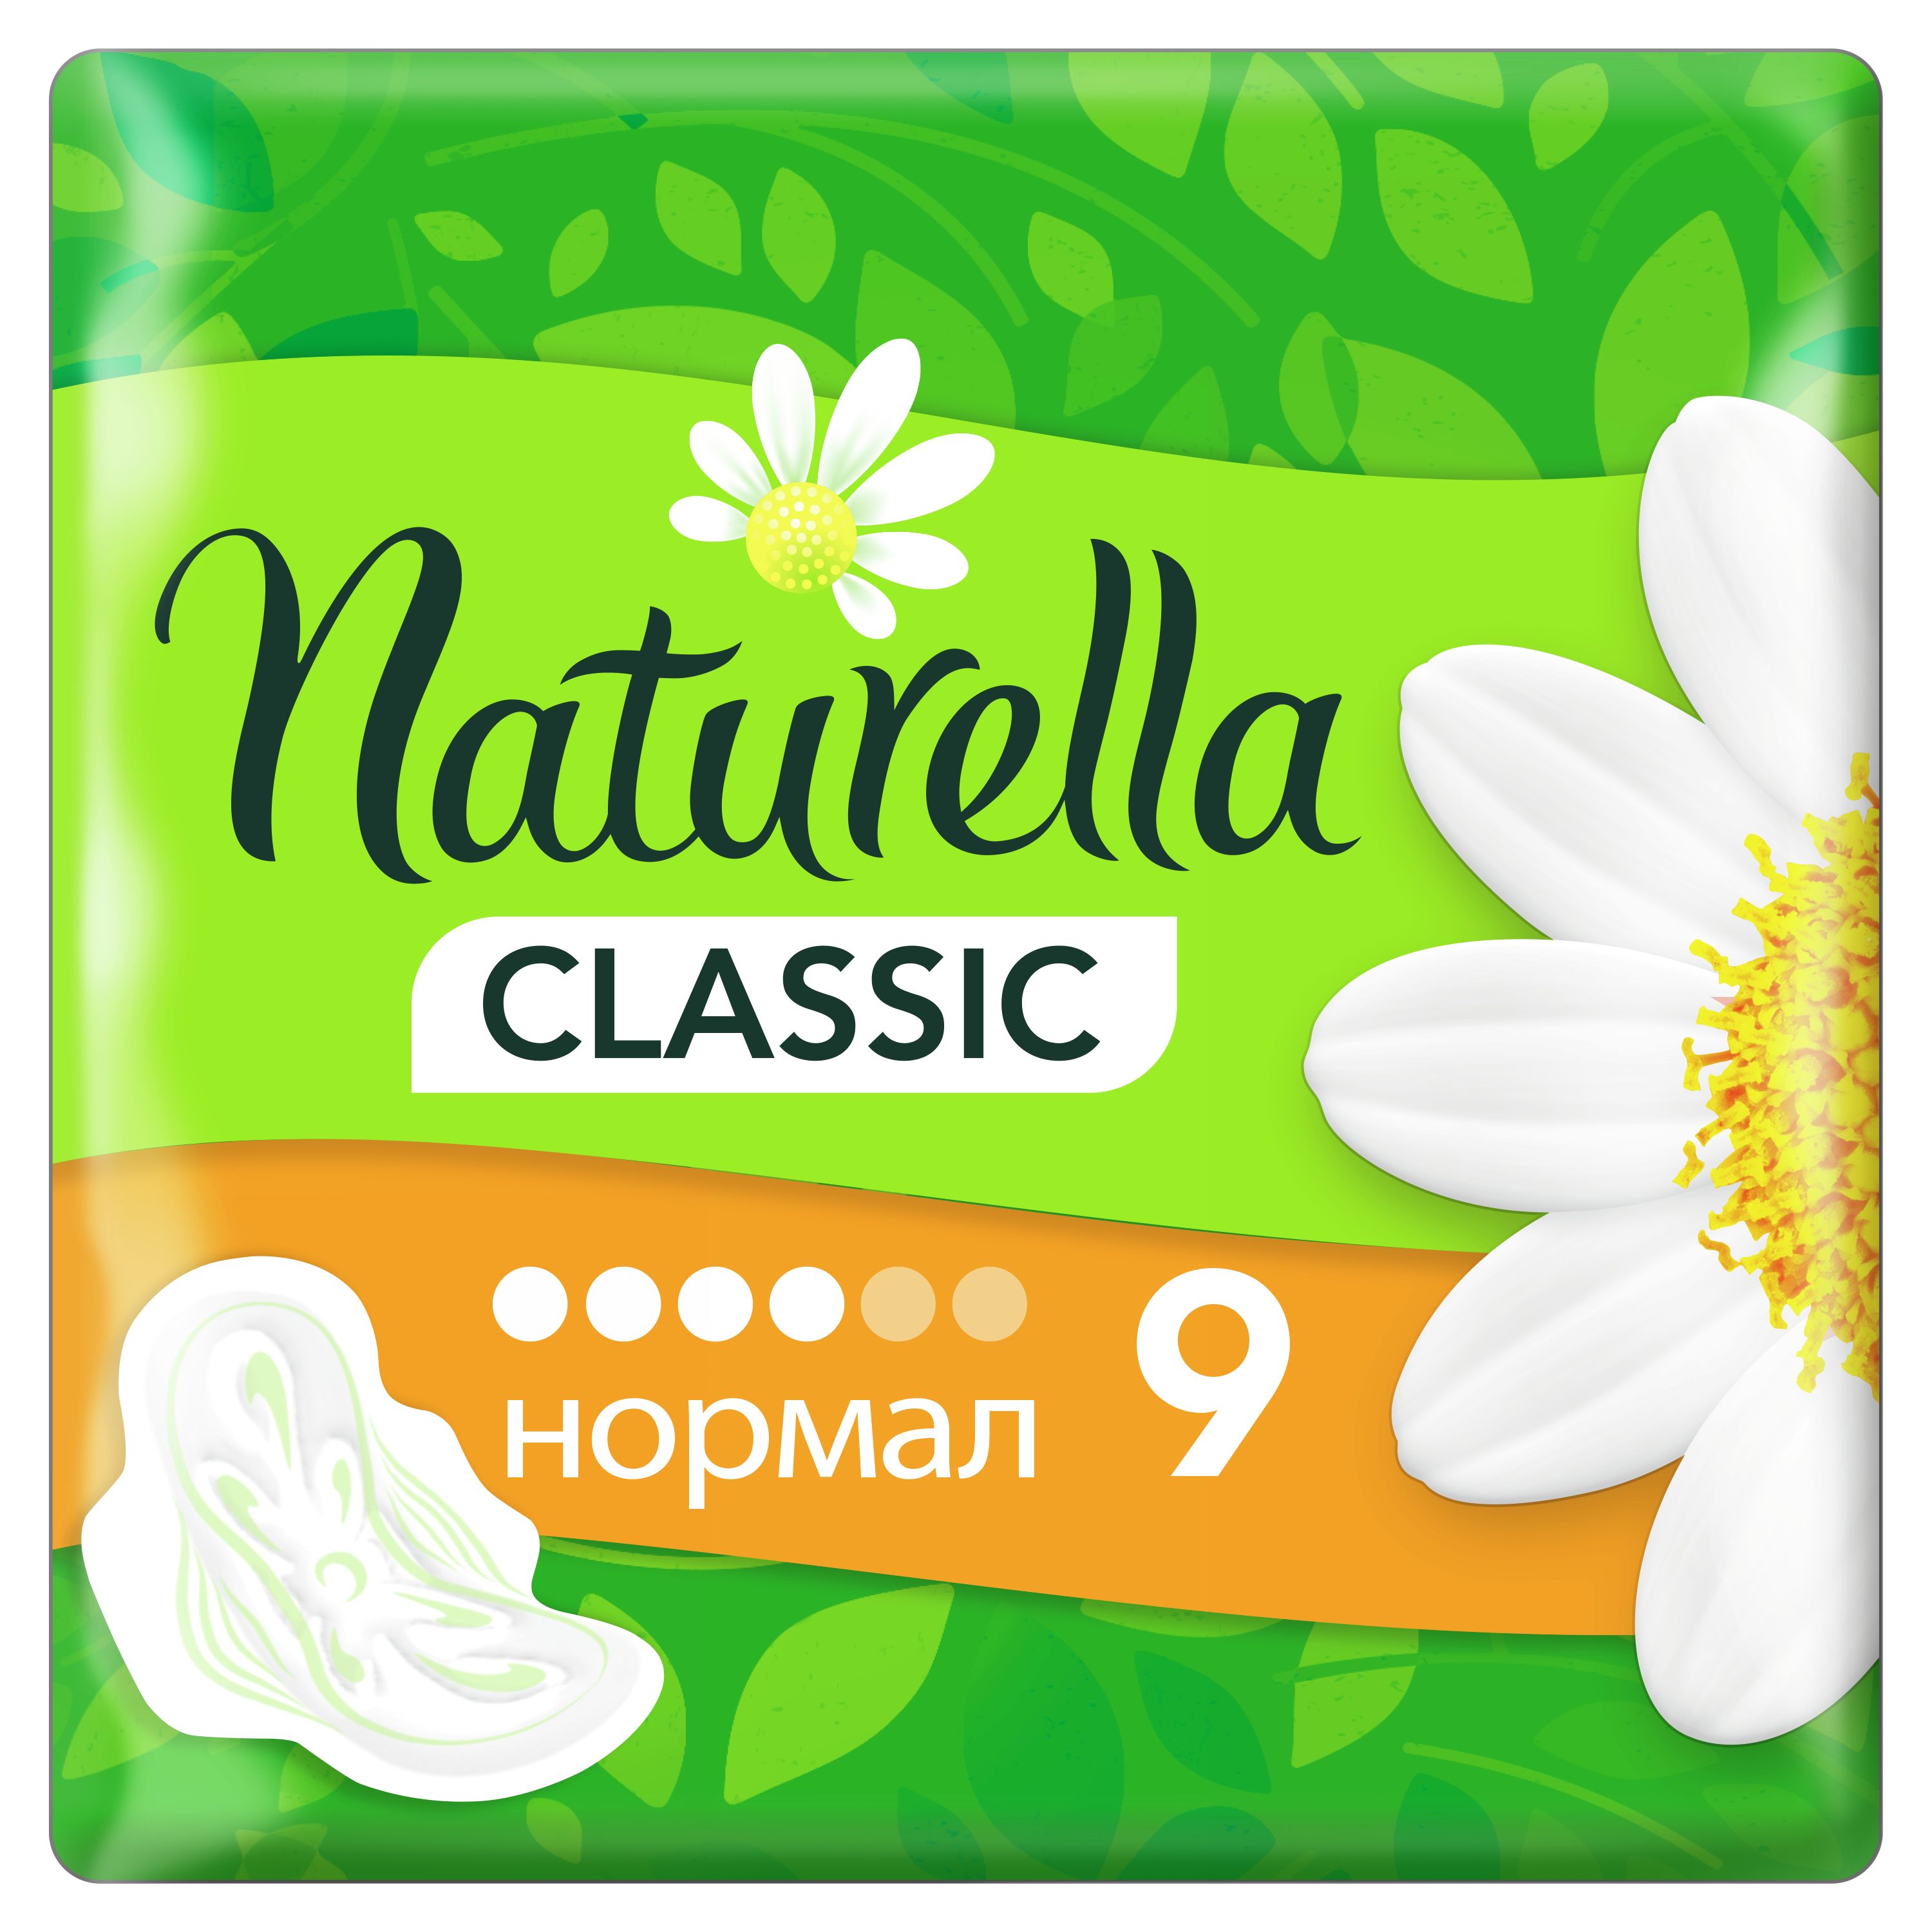 Прокладки гигиенические Naturella Classic Ромашка, 9 шт. гигиенические прокладки naturella classic maxi 360 г 7штук 6 упаковок